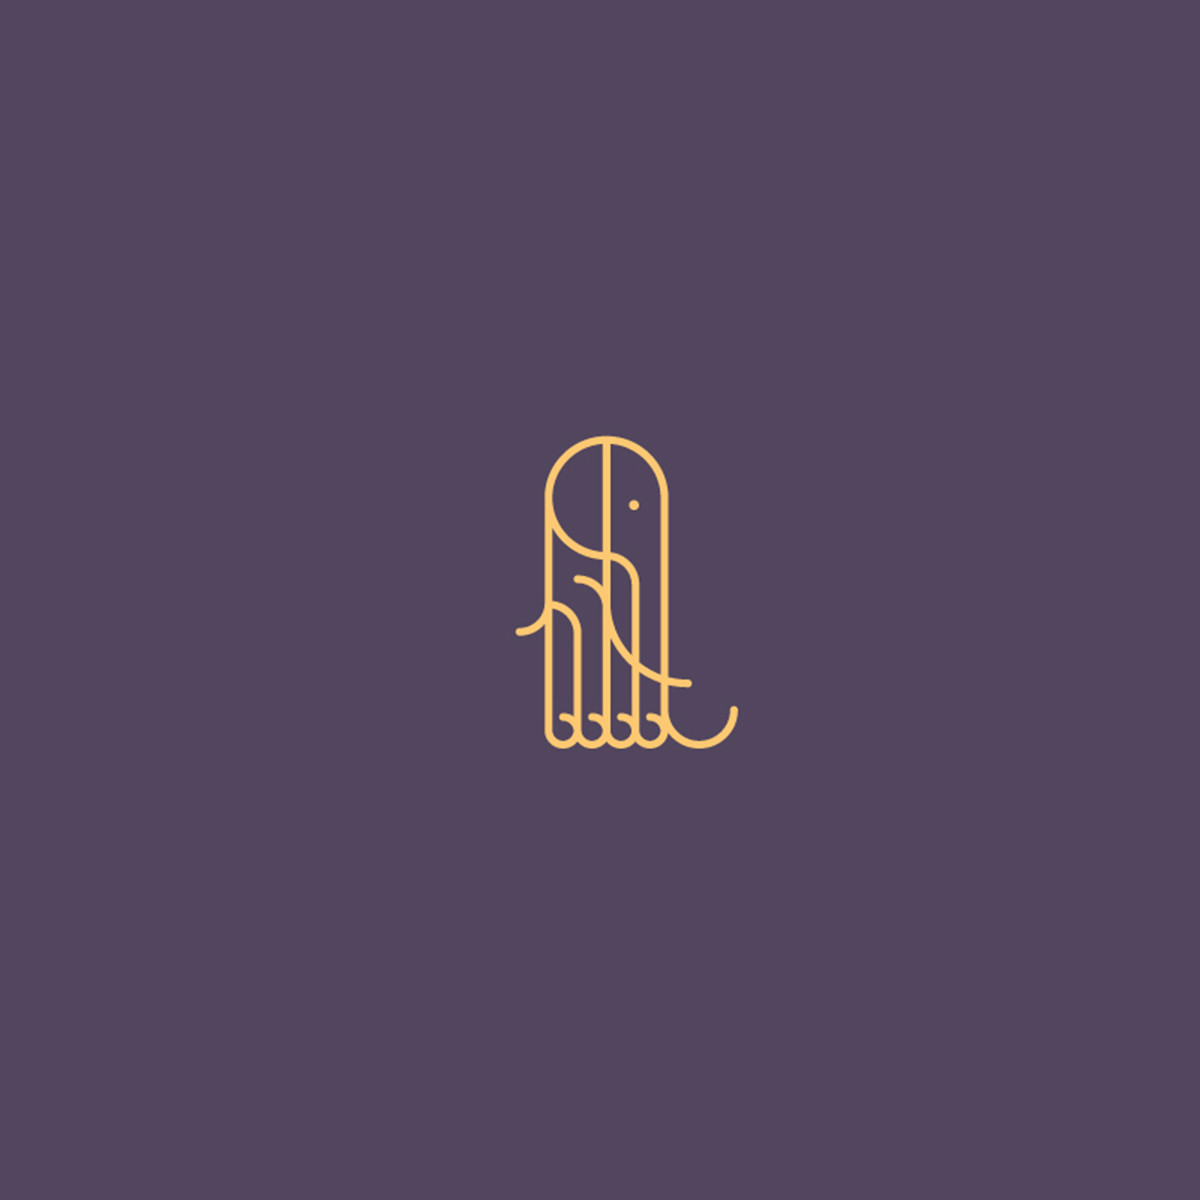 Adobe Portfolio logo brand branding  ILLUSTRATION  typography  